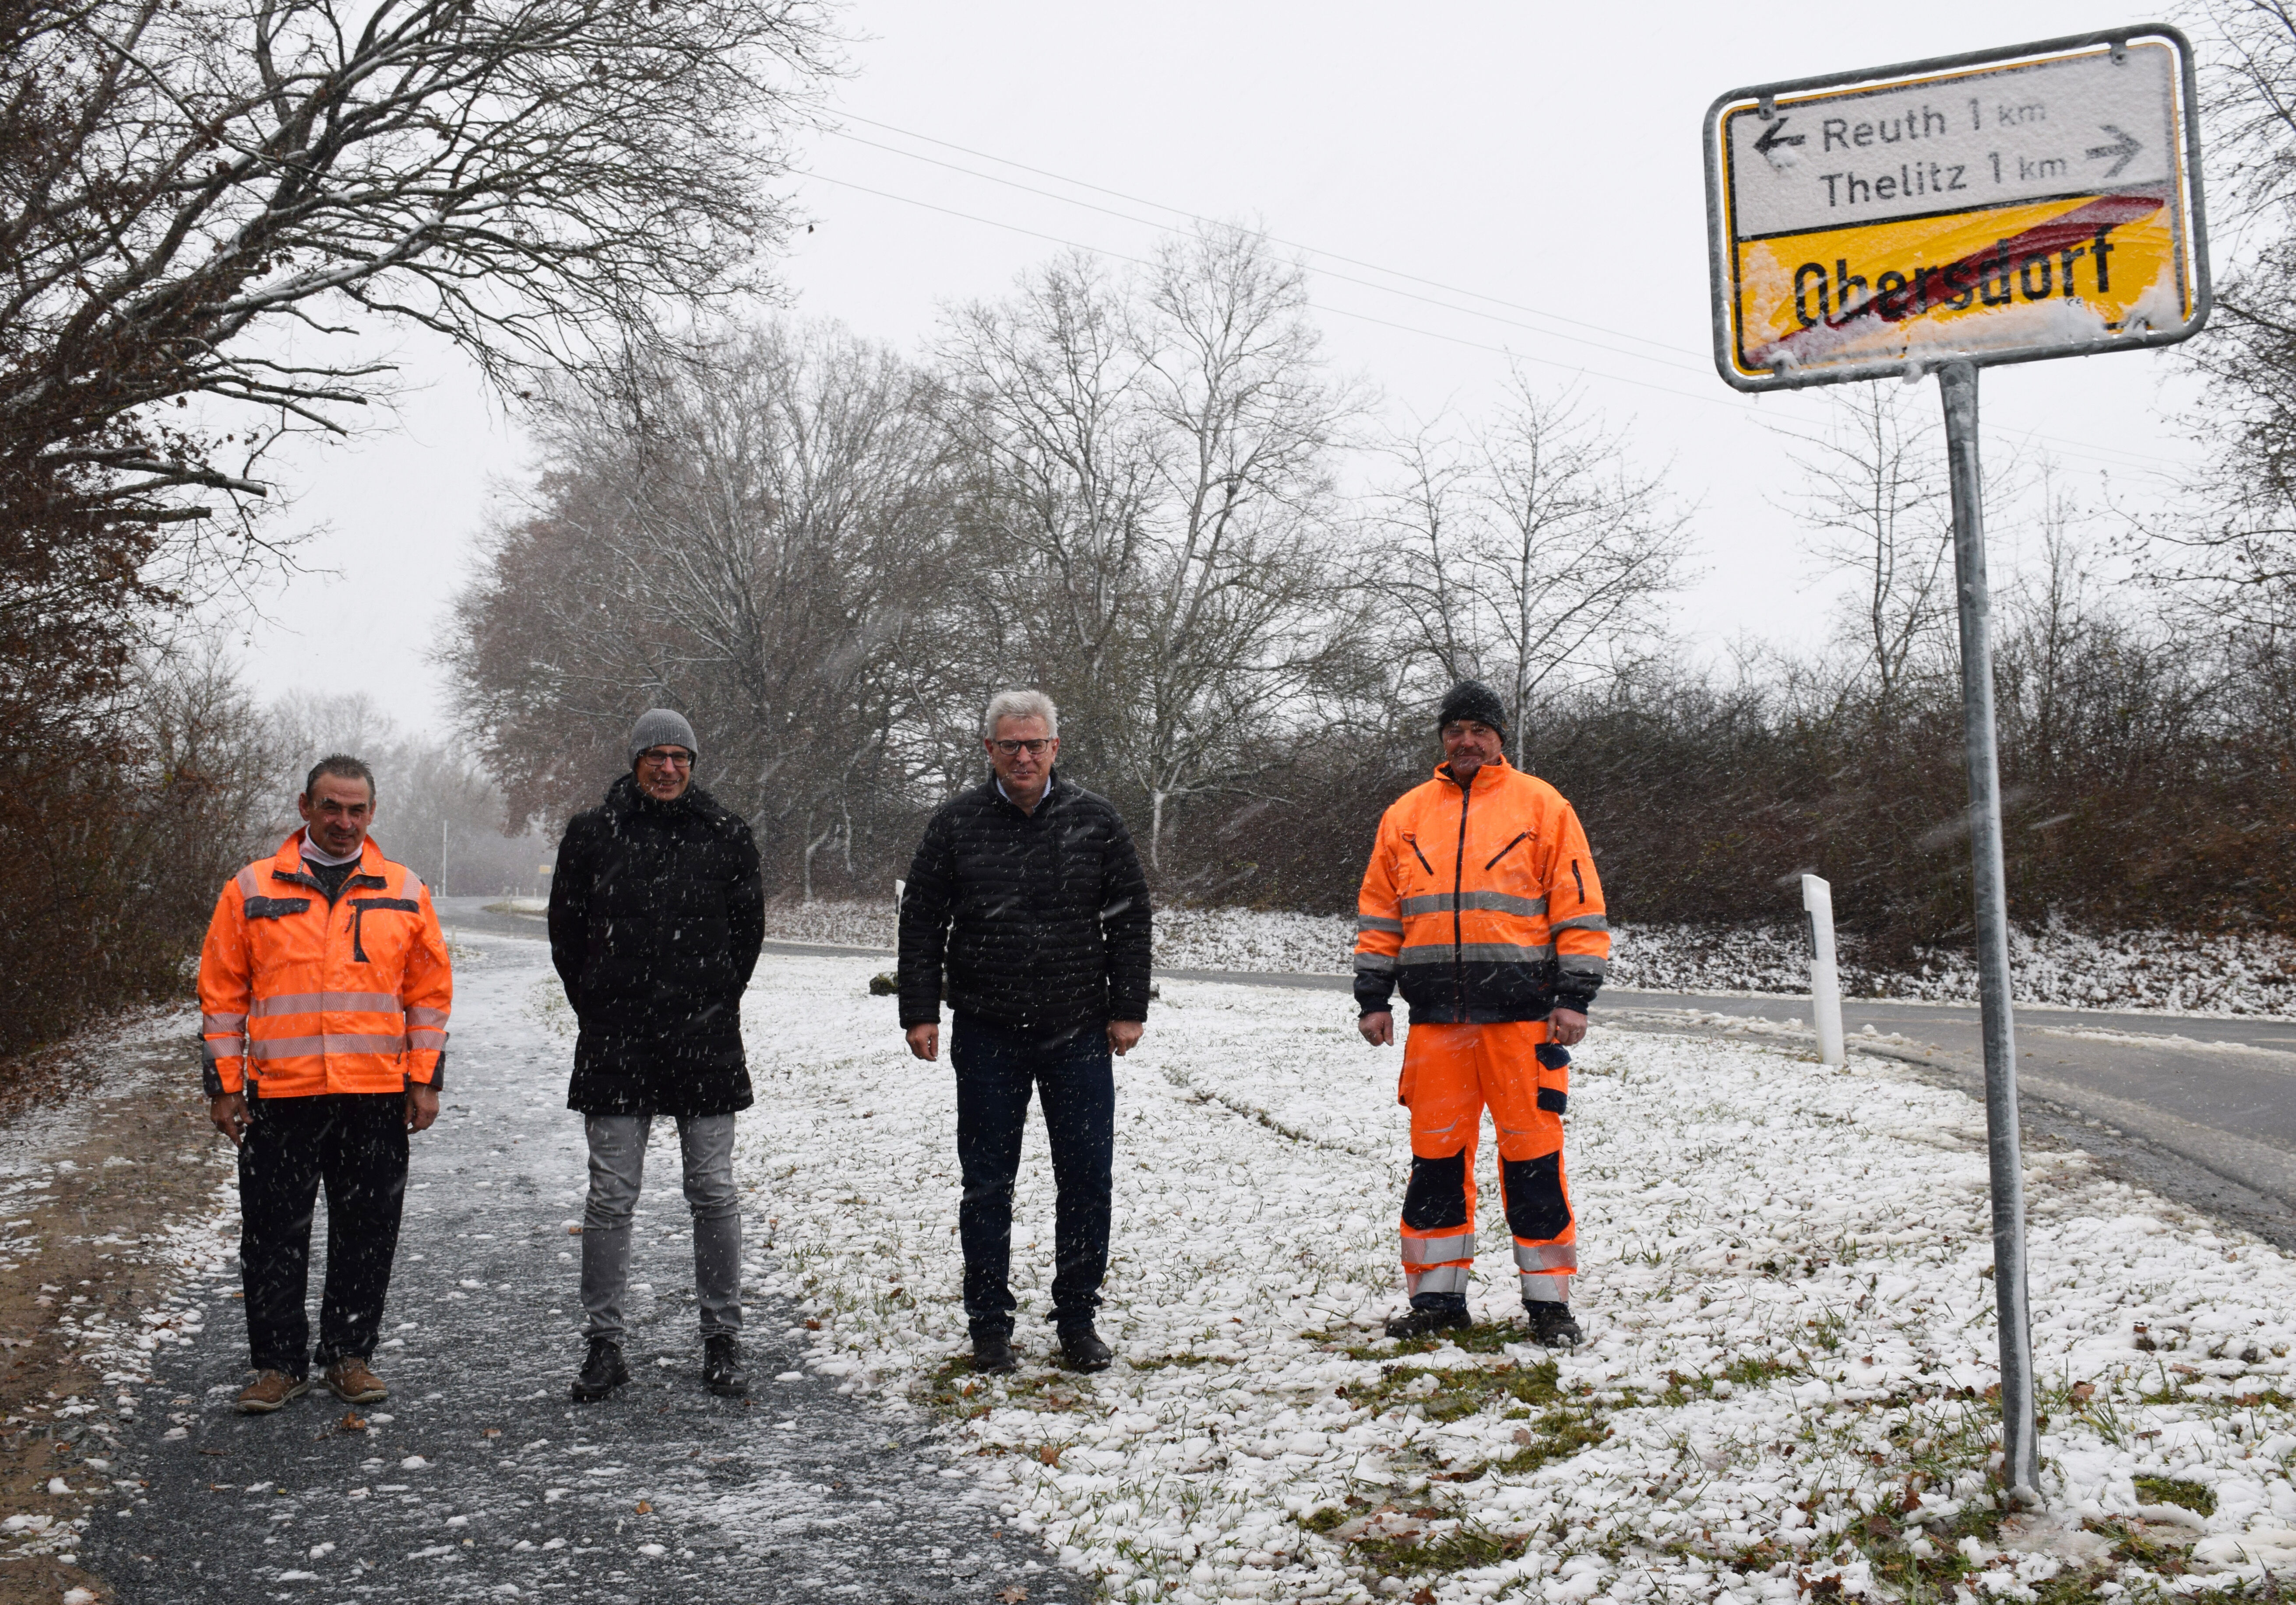 Ortstermin bei Schneeschauer: Landrat Meißner und Bürgermeister Zeulner nahmen den neuen Gehweg in Augenschein. Foto: Heidi Bauer